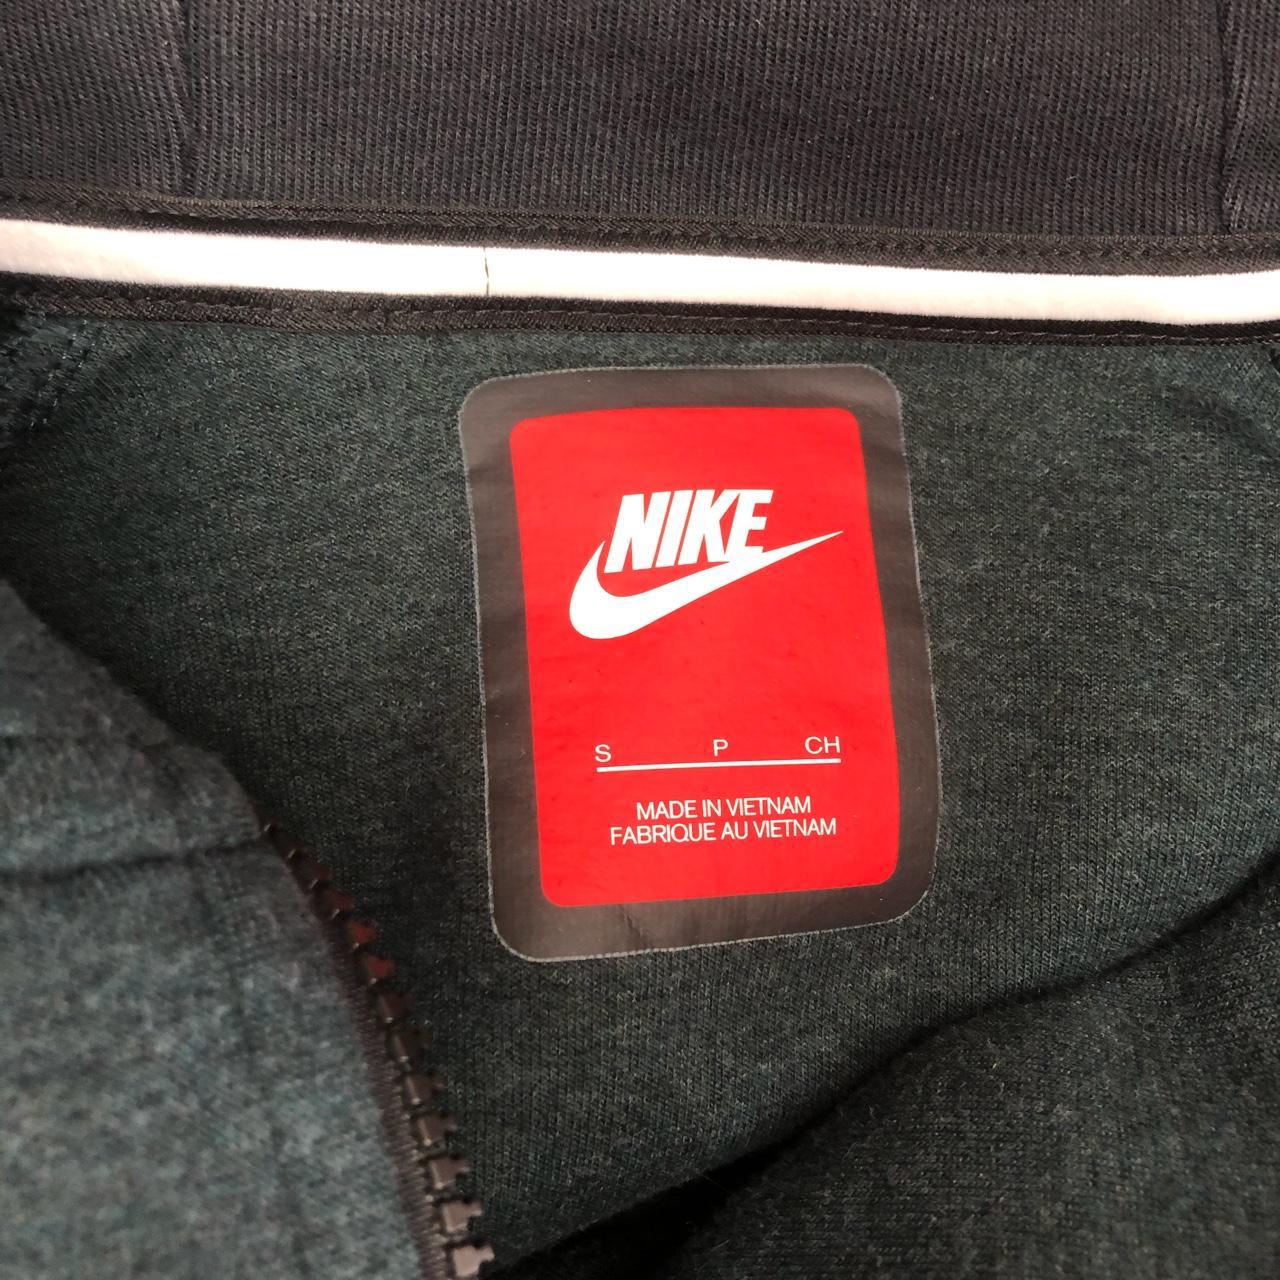 Nike Tech Fleece Top in Khaki Size Small 8/10... - Depop